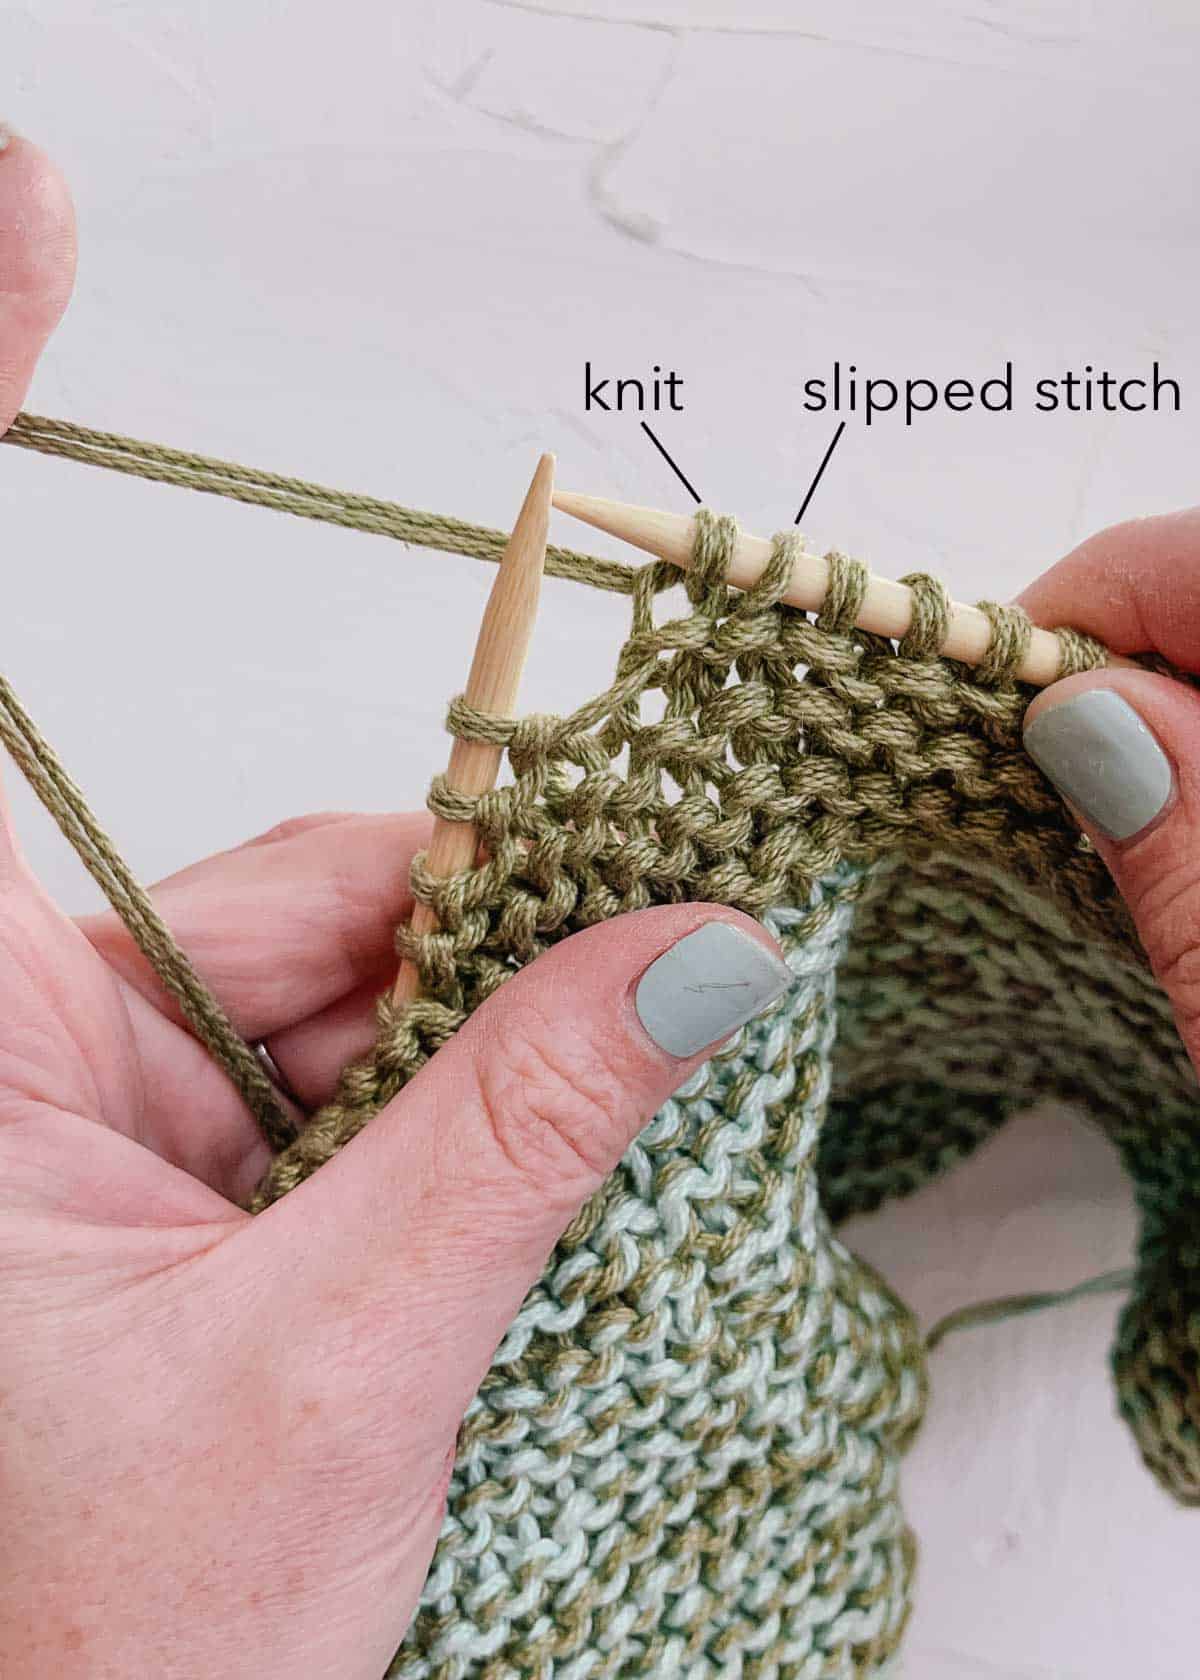 One knit stitch and one slipped stitch on bamboo knitting needles. 